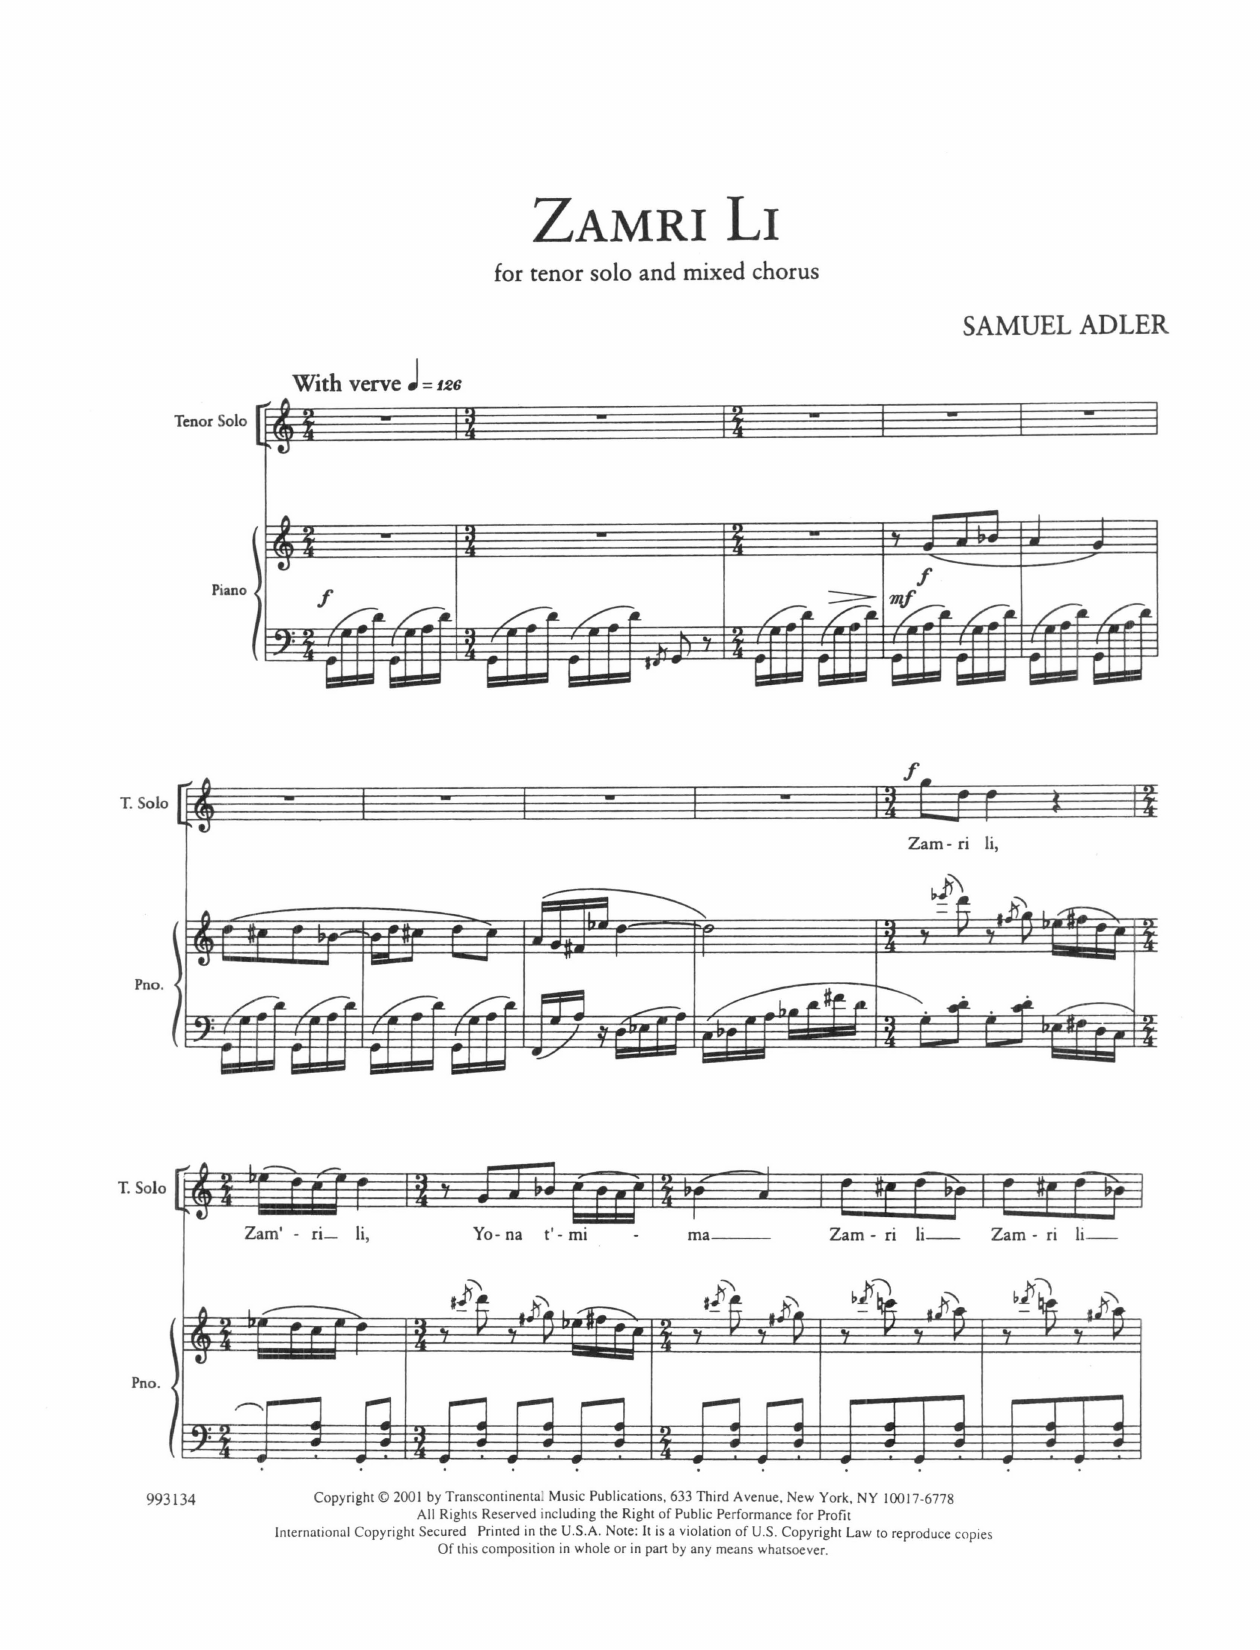 Download Samuel Adler Five Sephardic Choruses: Zamri Li Sheet Music